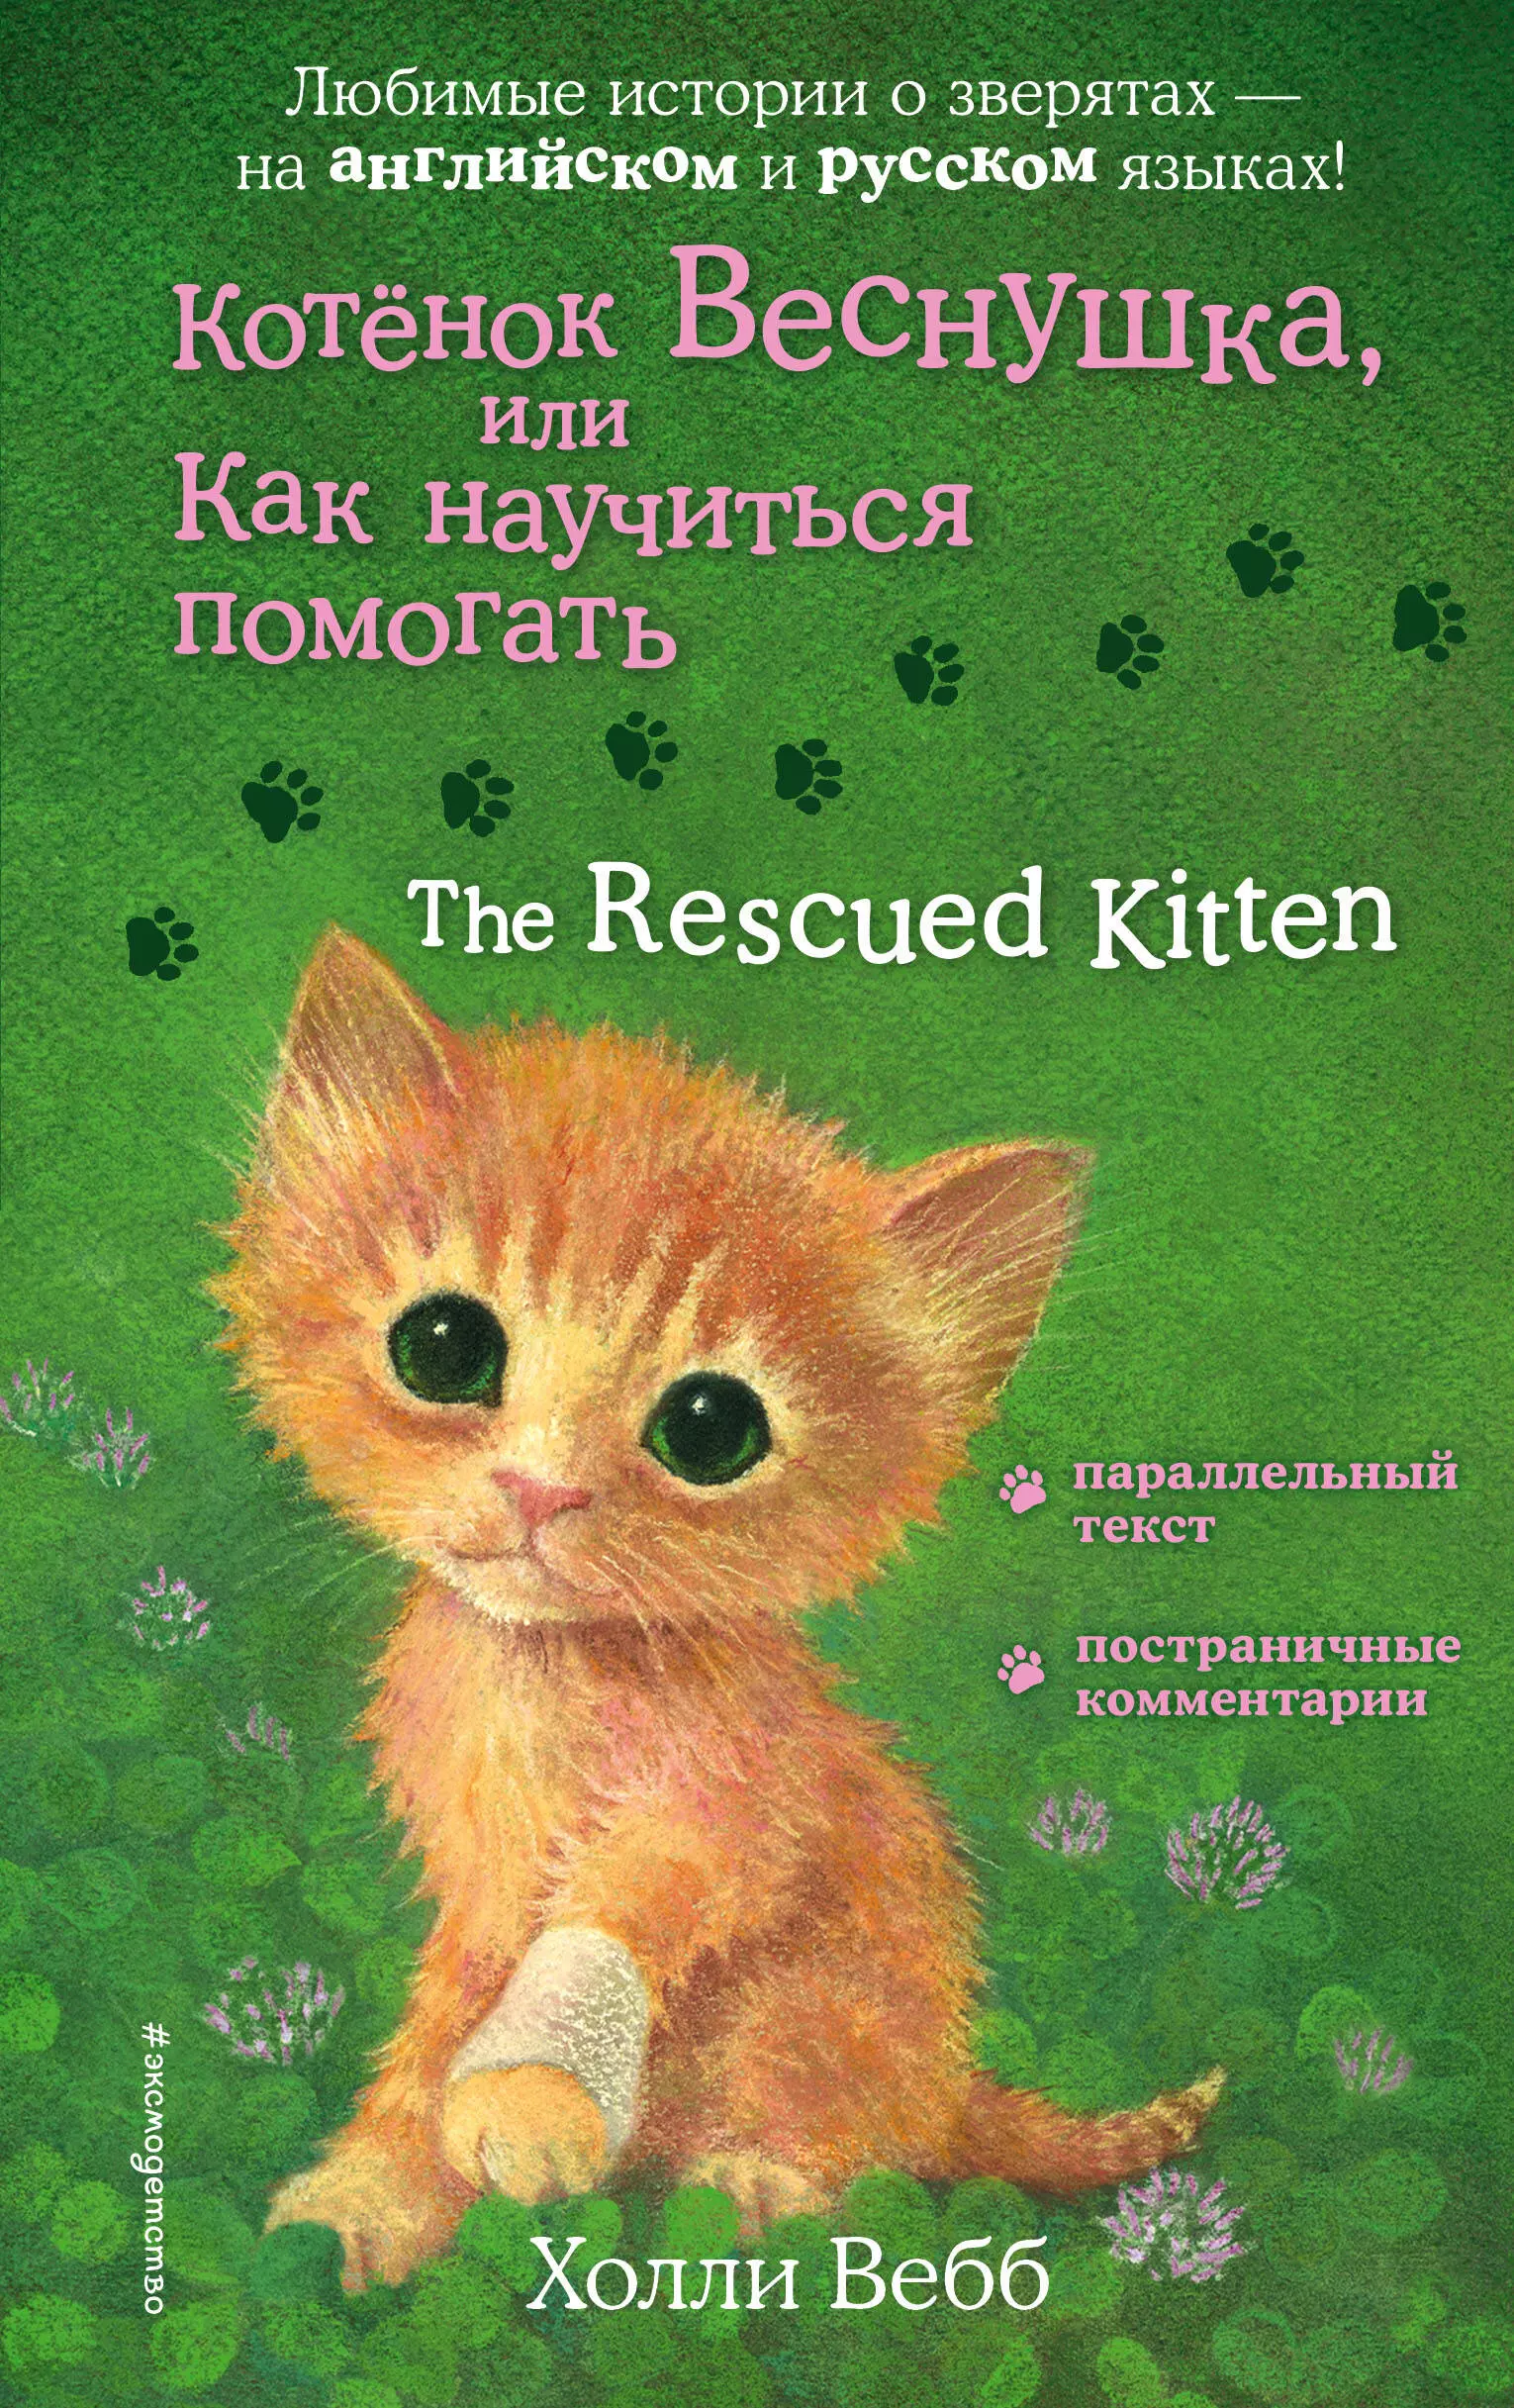 Котенок Веснушка, или Как научиться помогать = The Rescued Kitten вебб холли котёнок веснушка или как научиться помогать выпуск 39